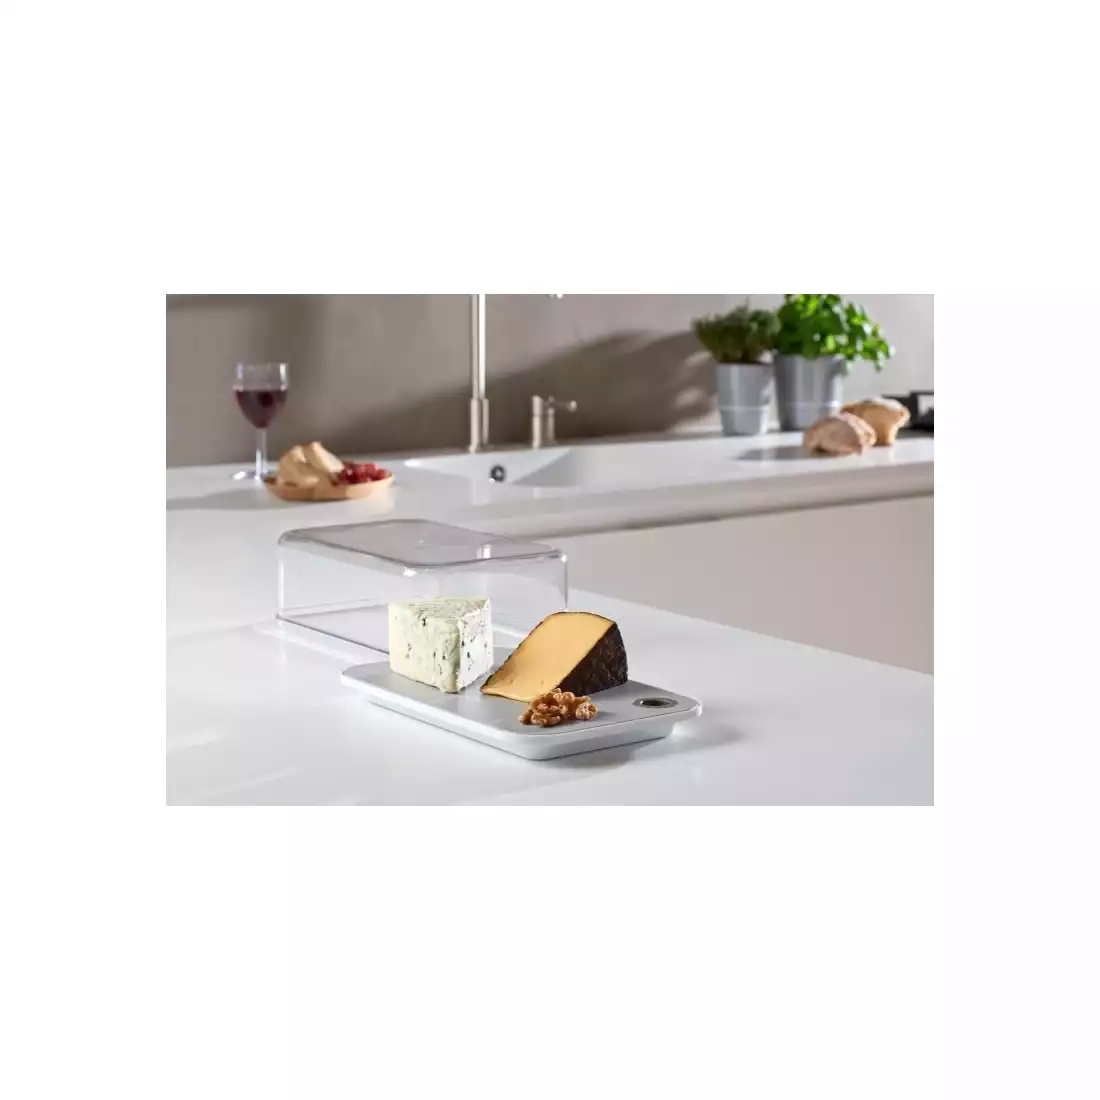 MEPAL MODULA nádoba na sýr s deskou 2800 ml